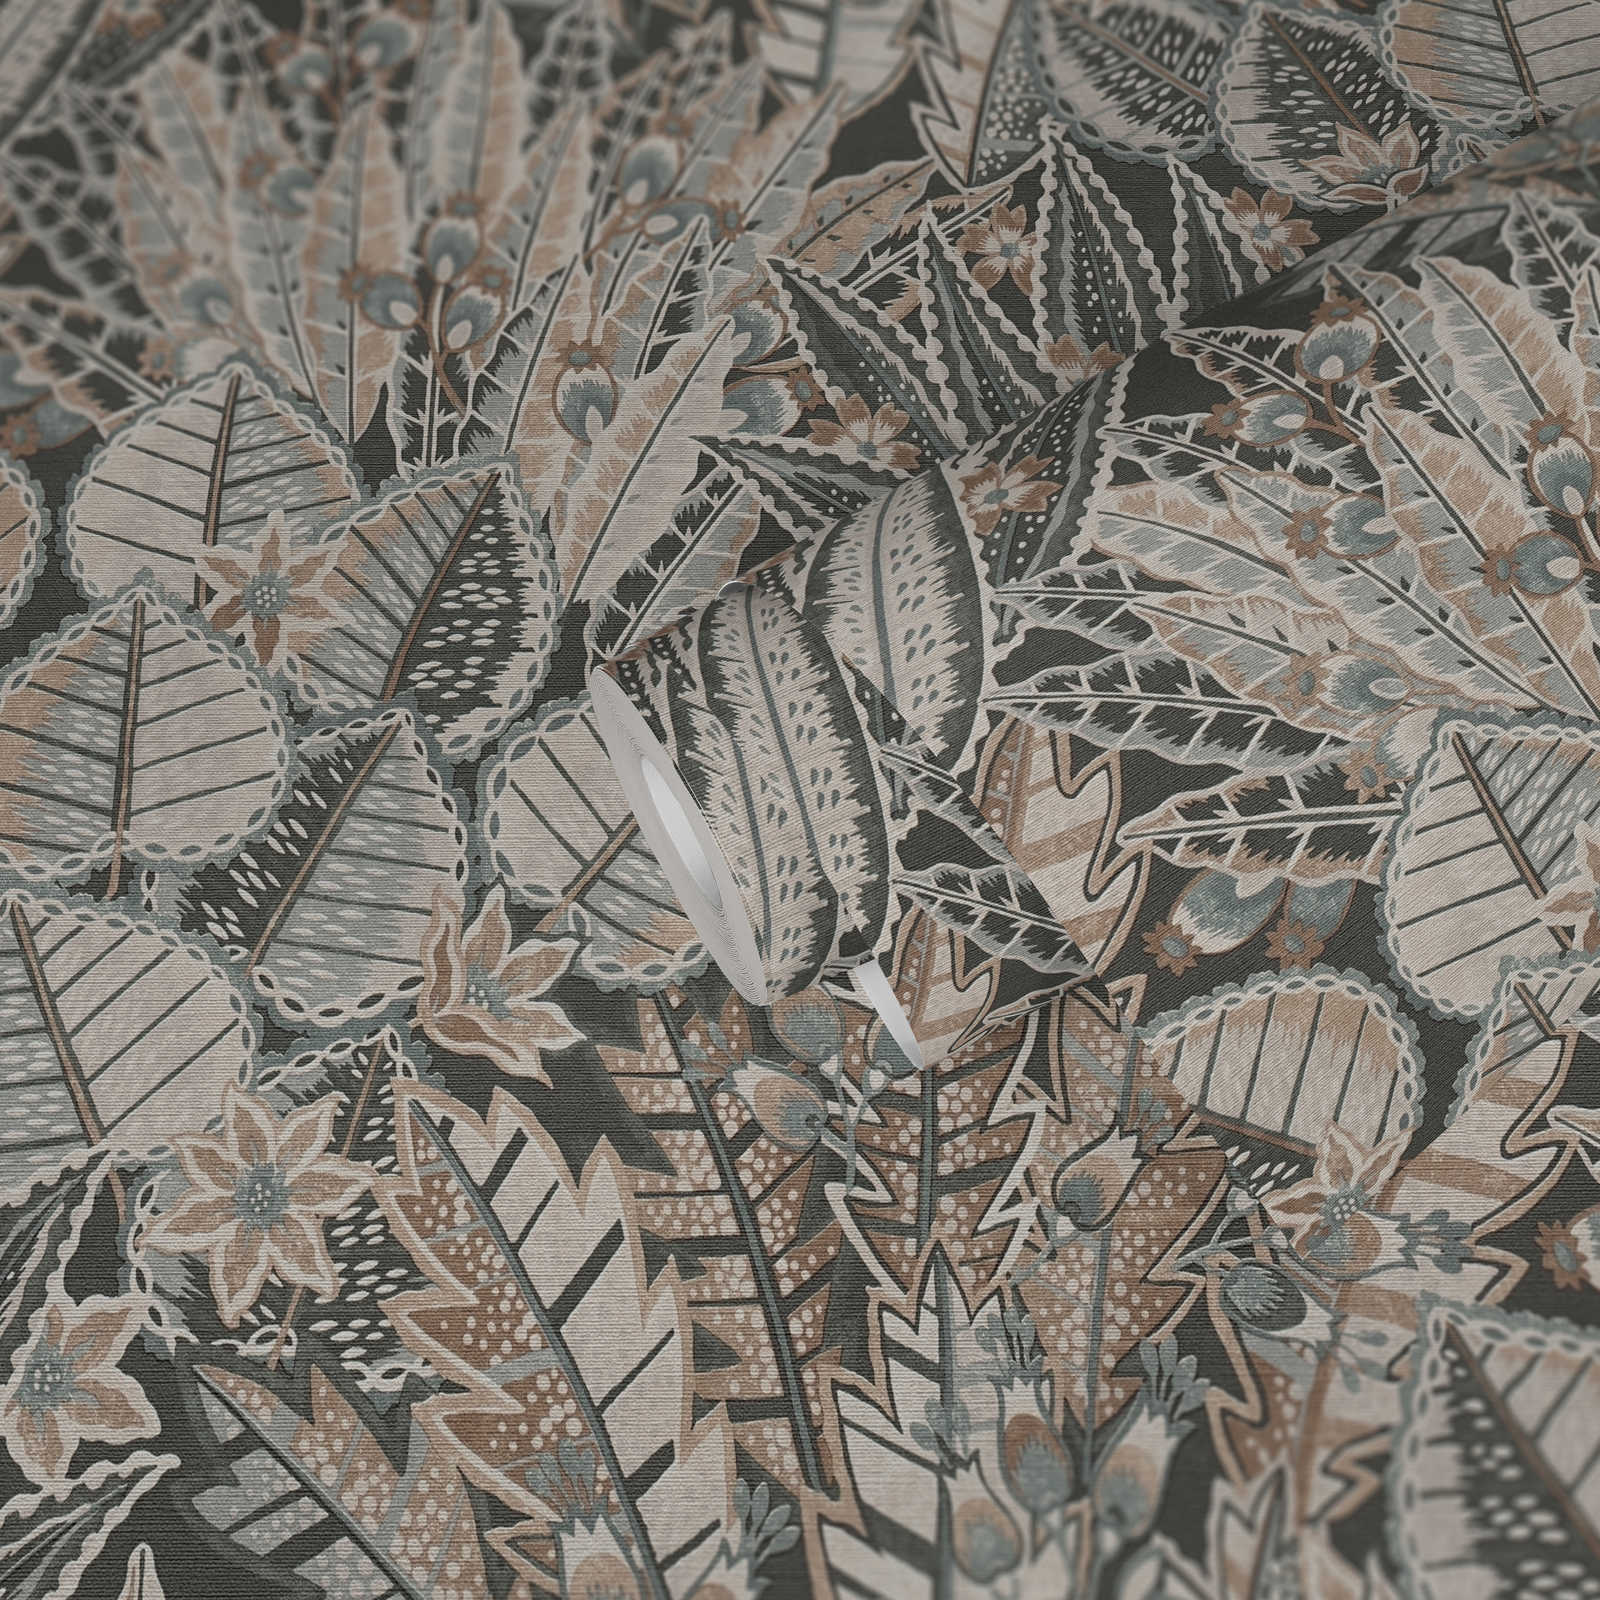             Papel pintado no tejido con motivo de hojas de aspecto abstracto - negro, marrón, gris
        